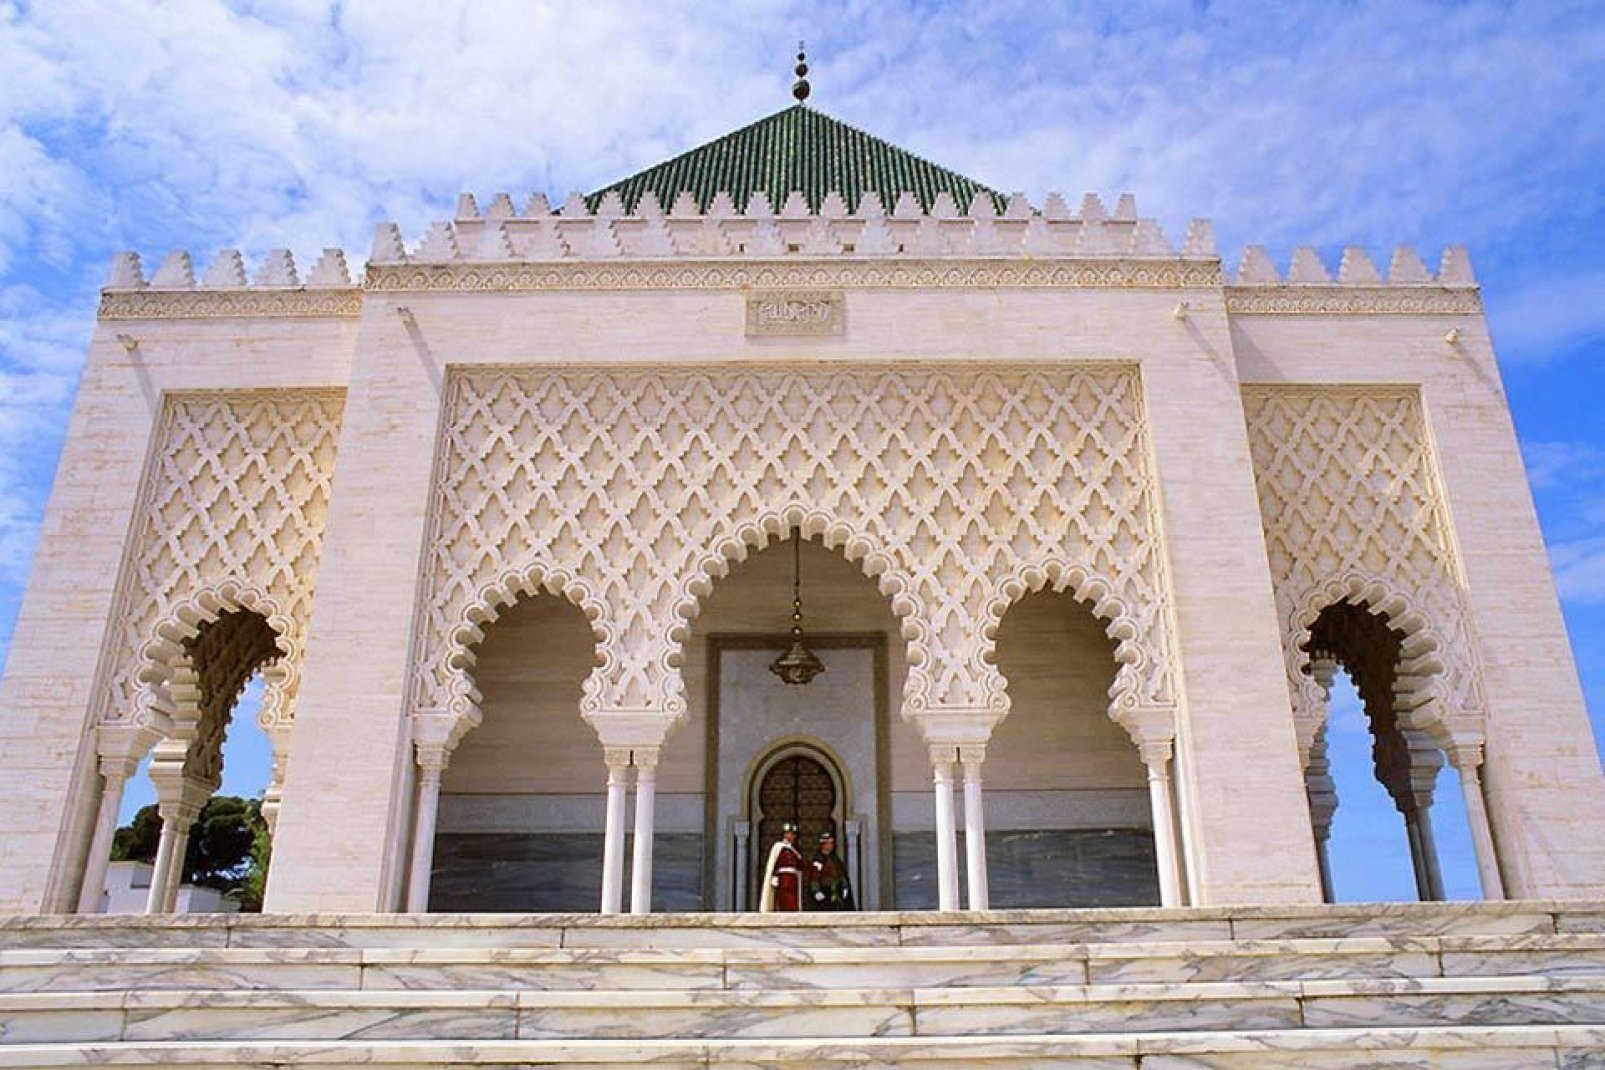 Das Mausoleum beheimatet die Grabstätte des Urhebers der Landesunabhängigkeit, Sultan Mohammed V. Das gleichnamige Bauwerk besteht aus Marmor und Zellige-Fliesen.